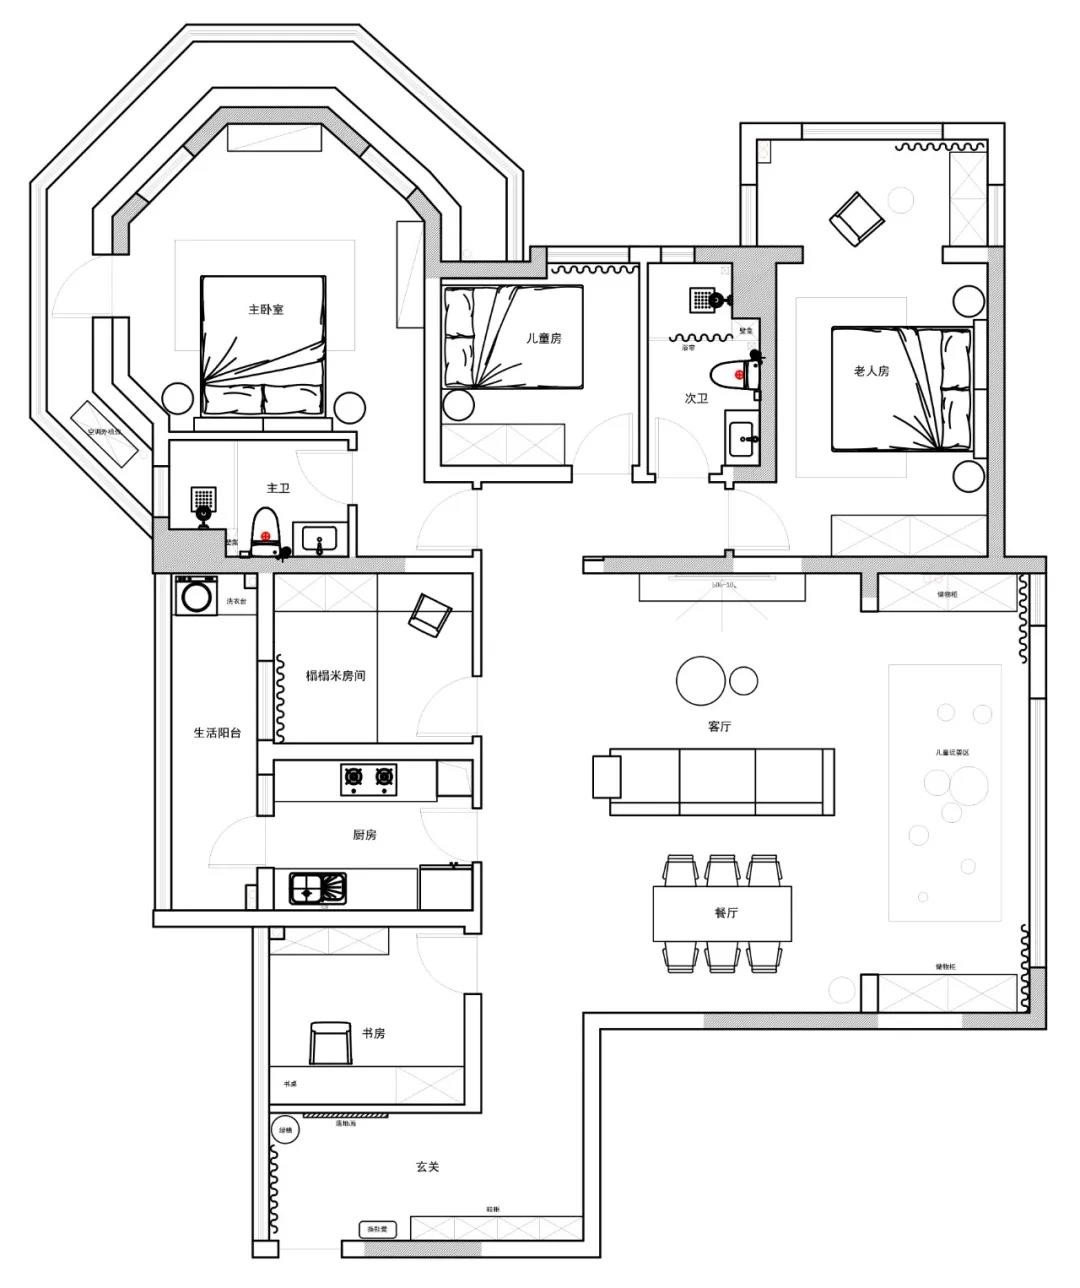 152美式四房装修效果图,中德英伦联邦-美式混搭装修案例效果图-美广网(图1)